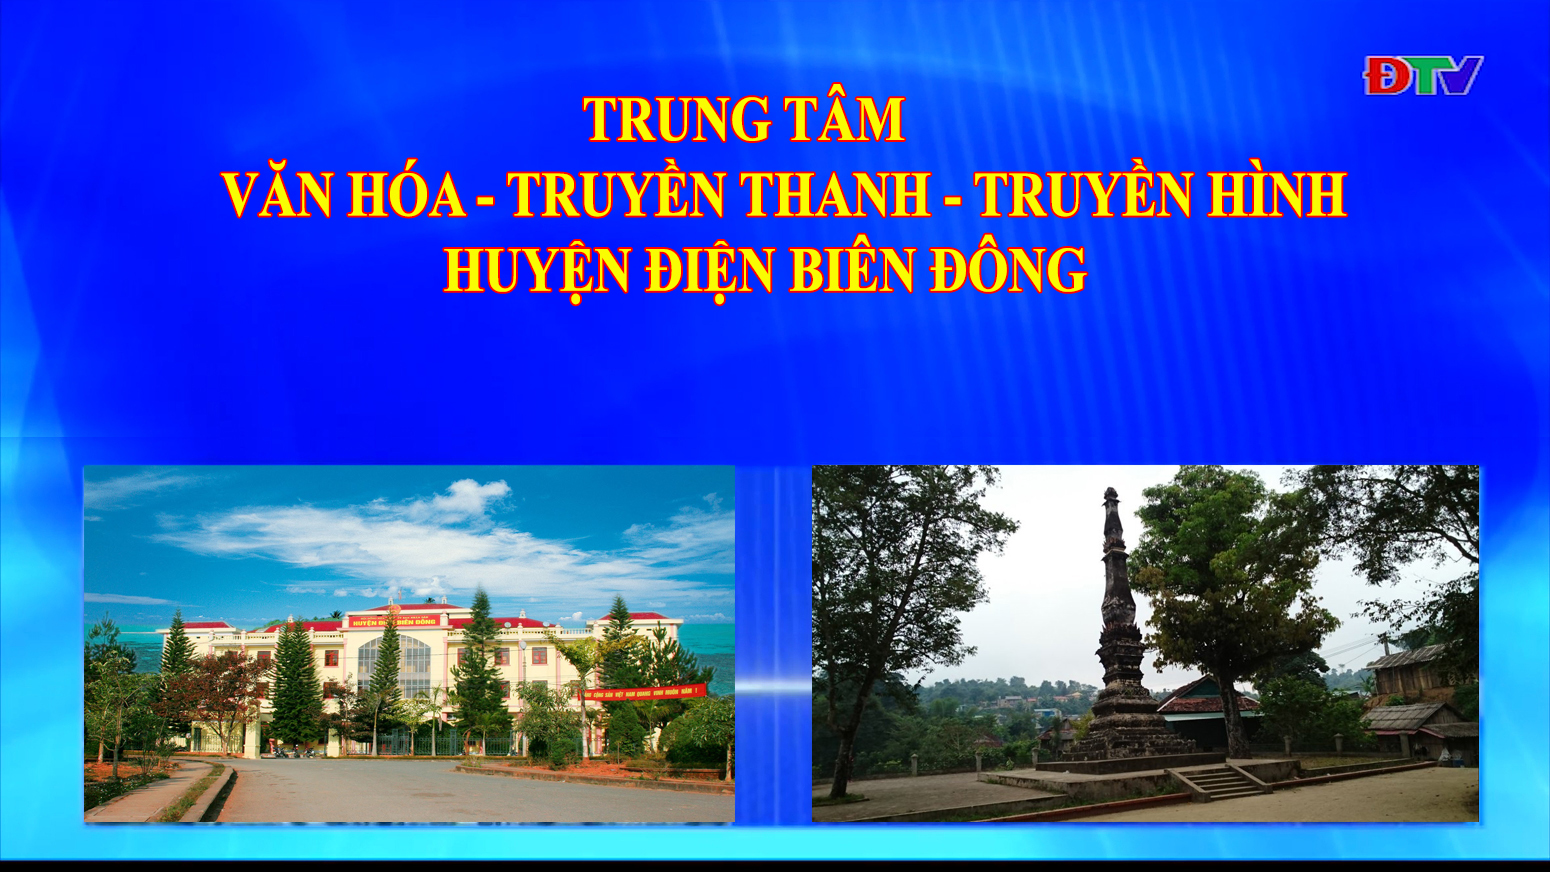 Trung tâm VH-TTTH huyện Điện Biên Đông (Ngày 9-1-2021)